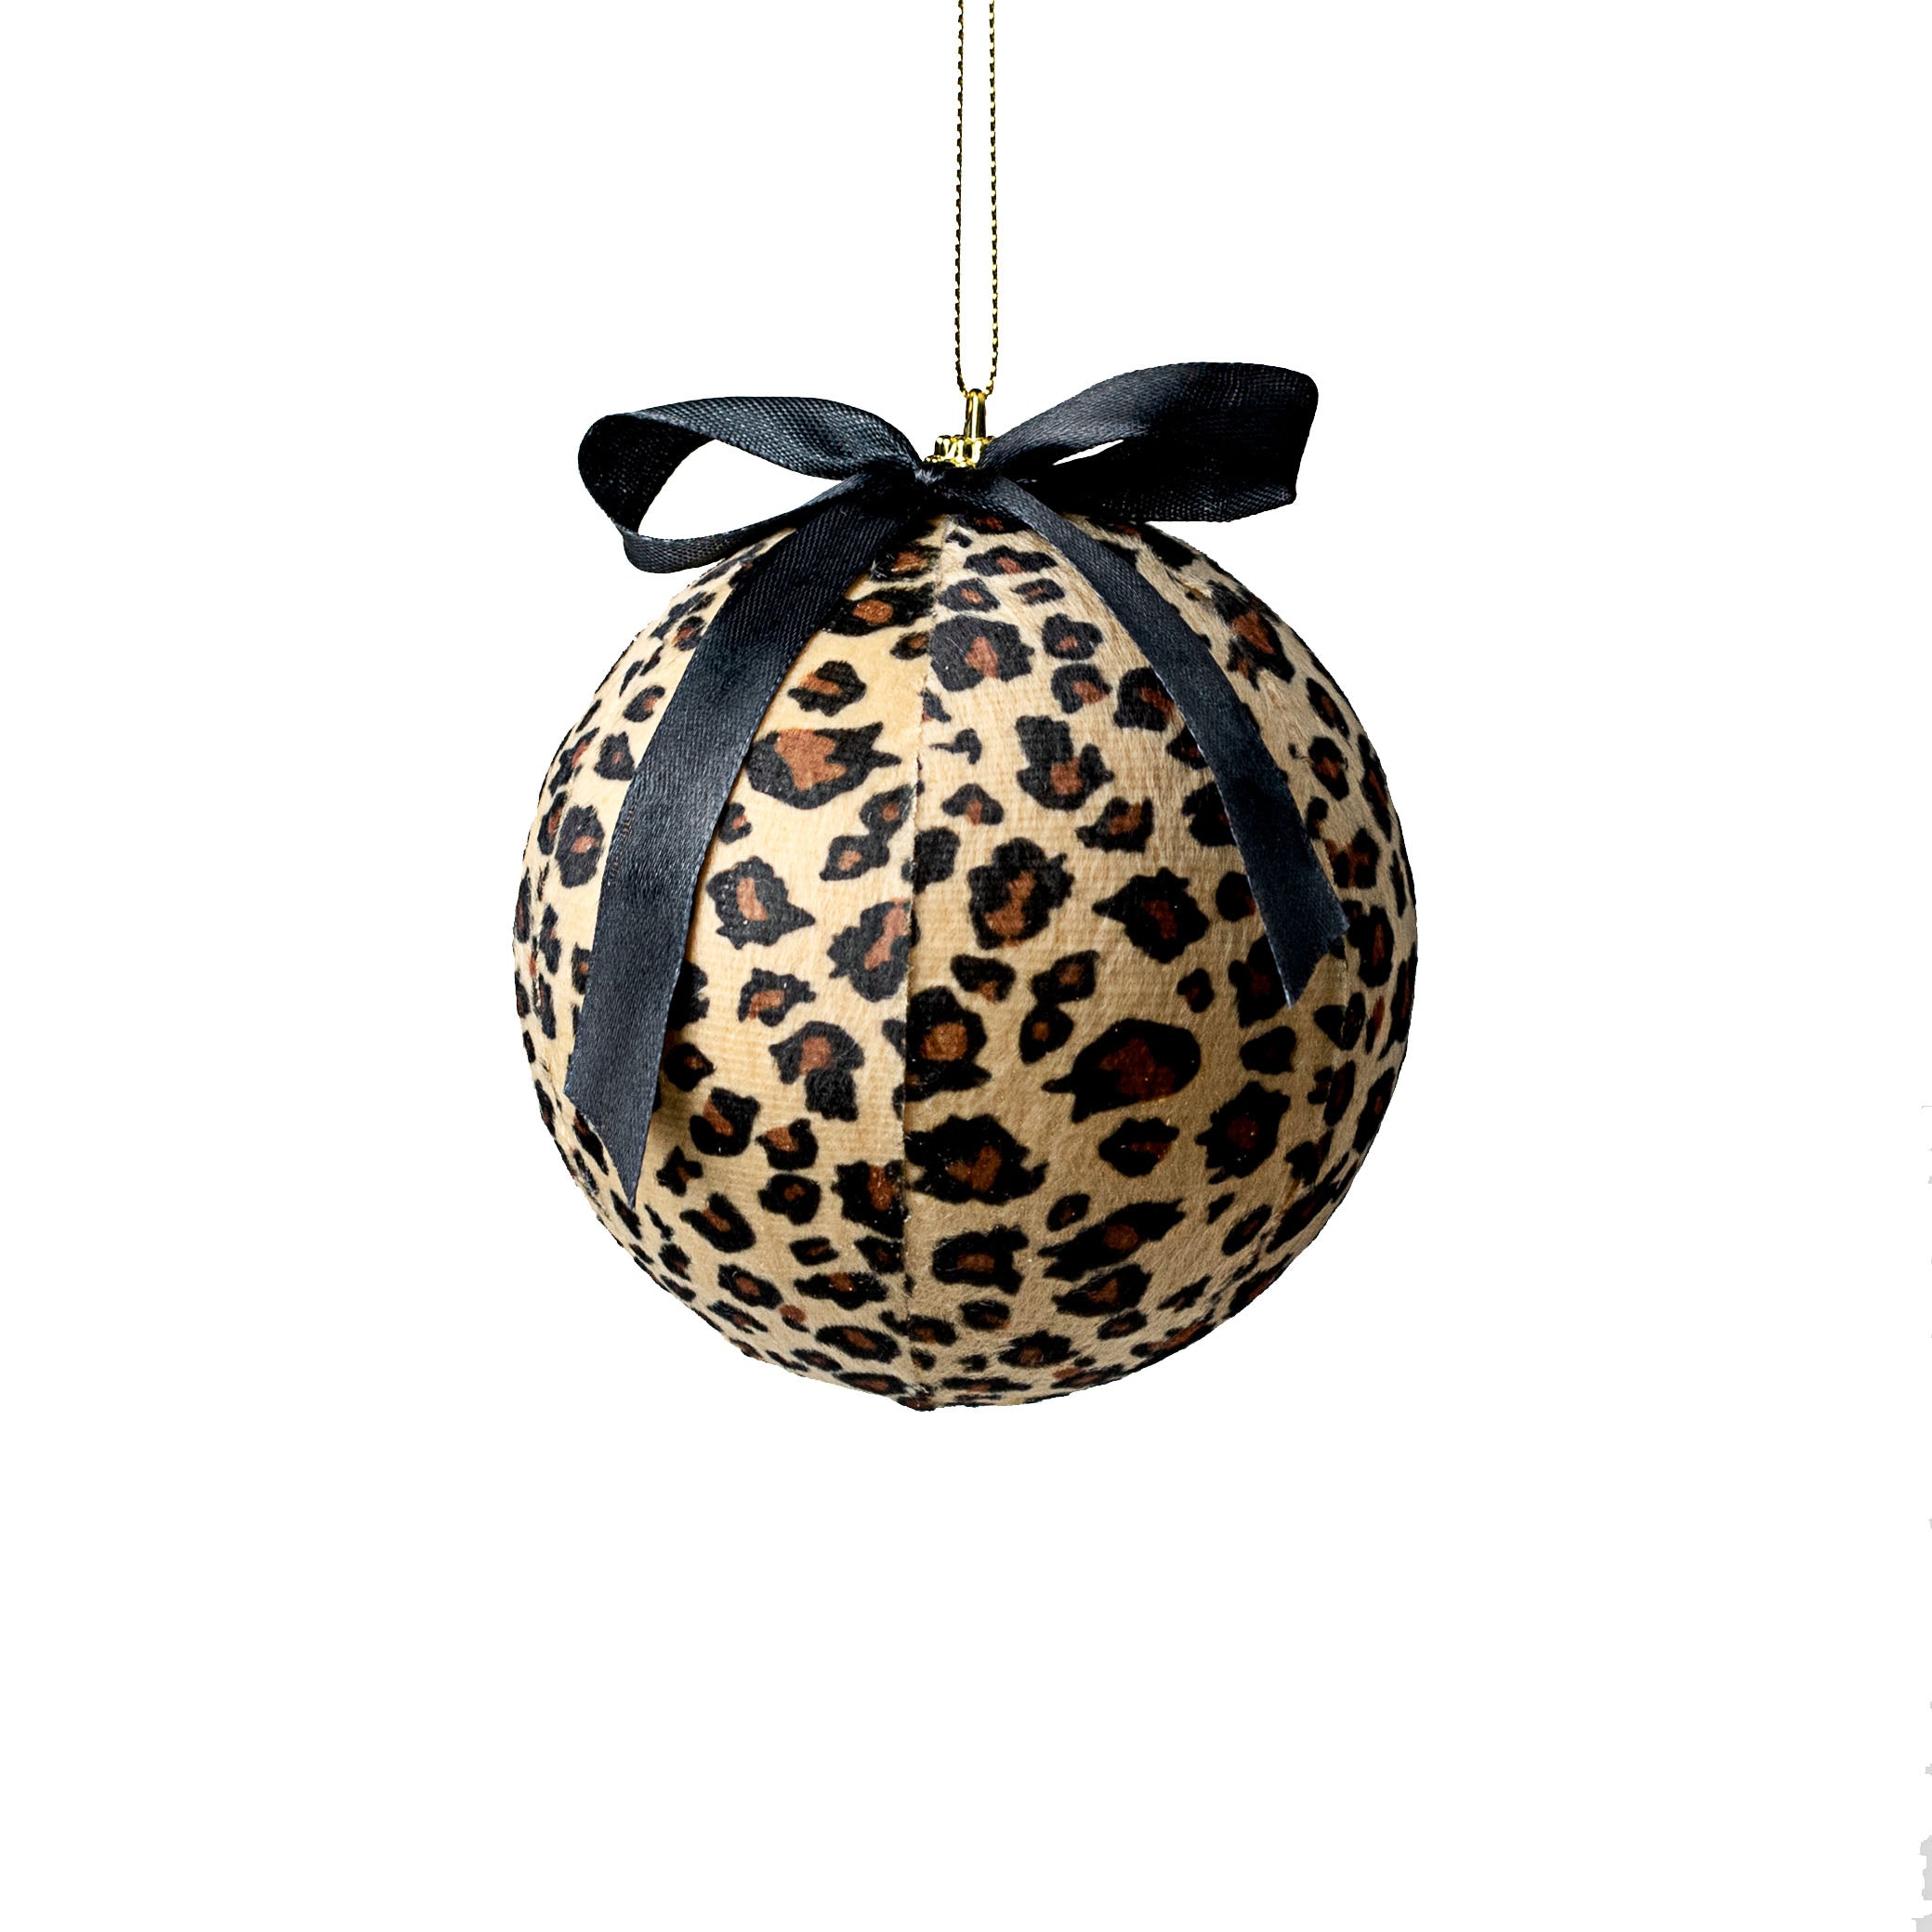 4" Fabric Ball Ornament: Cheetah